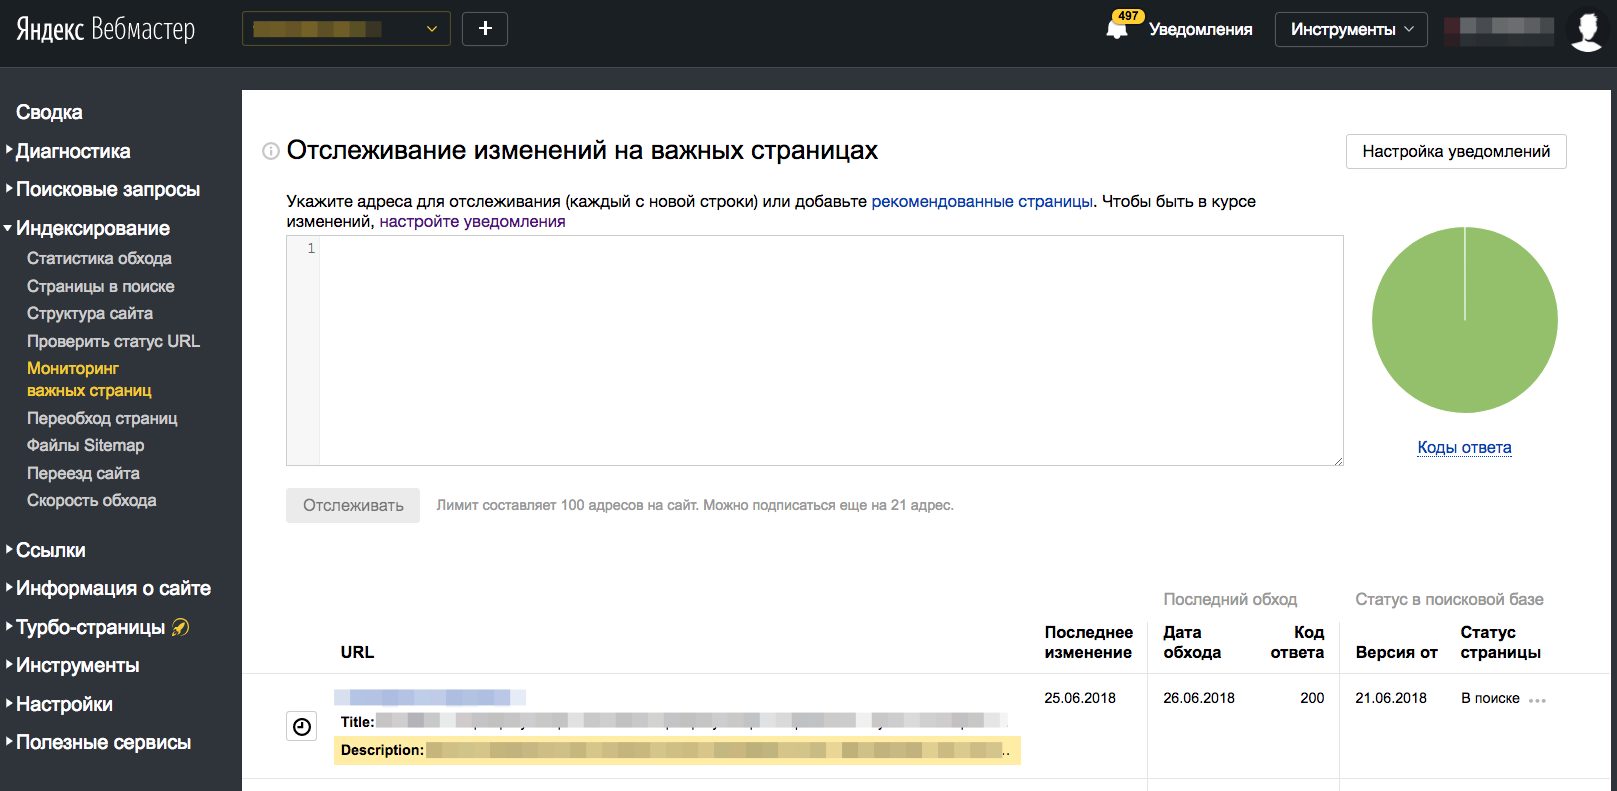 Интерфейс сервиса для аудита сайтов Яндекс.Вебмастер